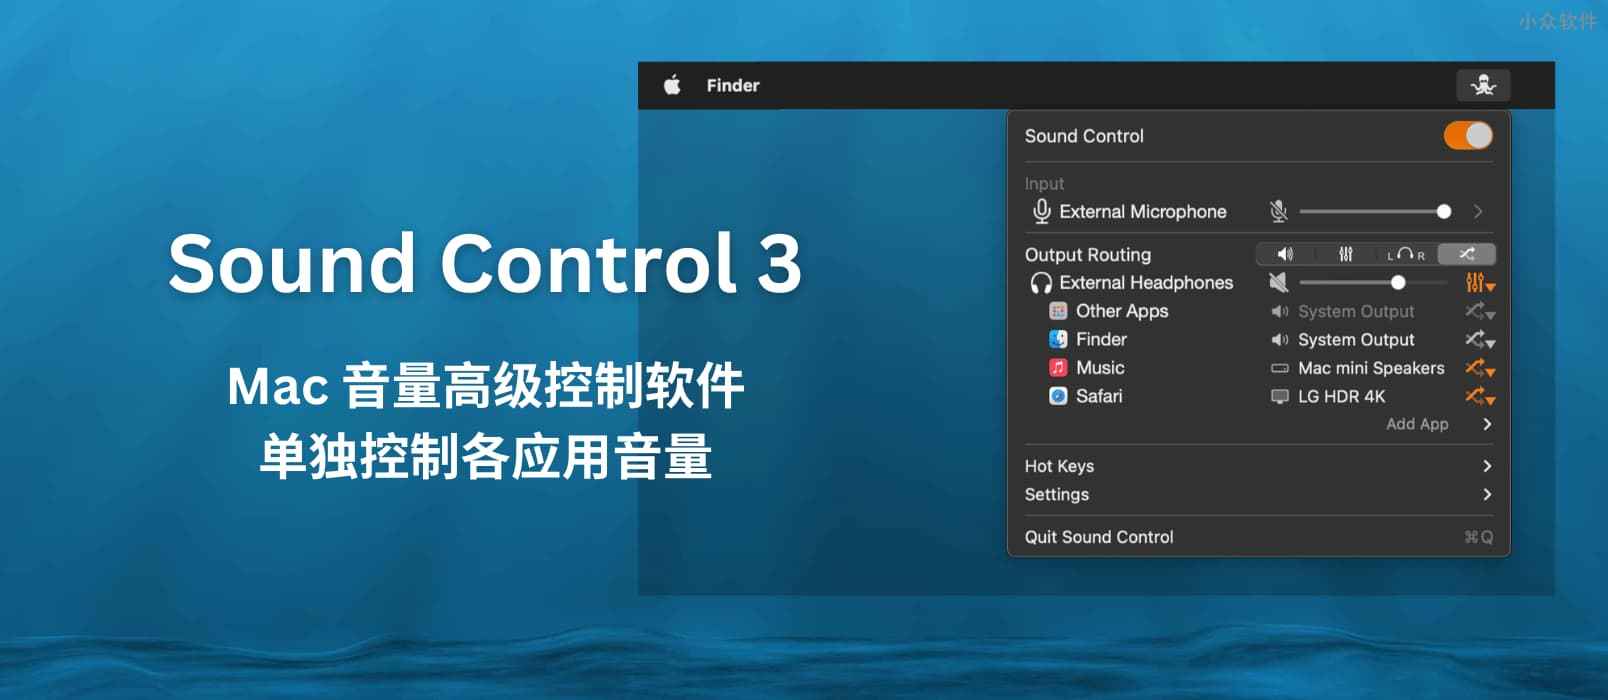 Sound Control 3 – Mac 音量高级控制：单独控制各应用音量